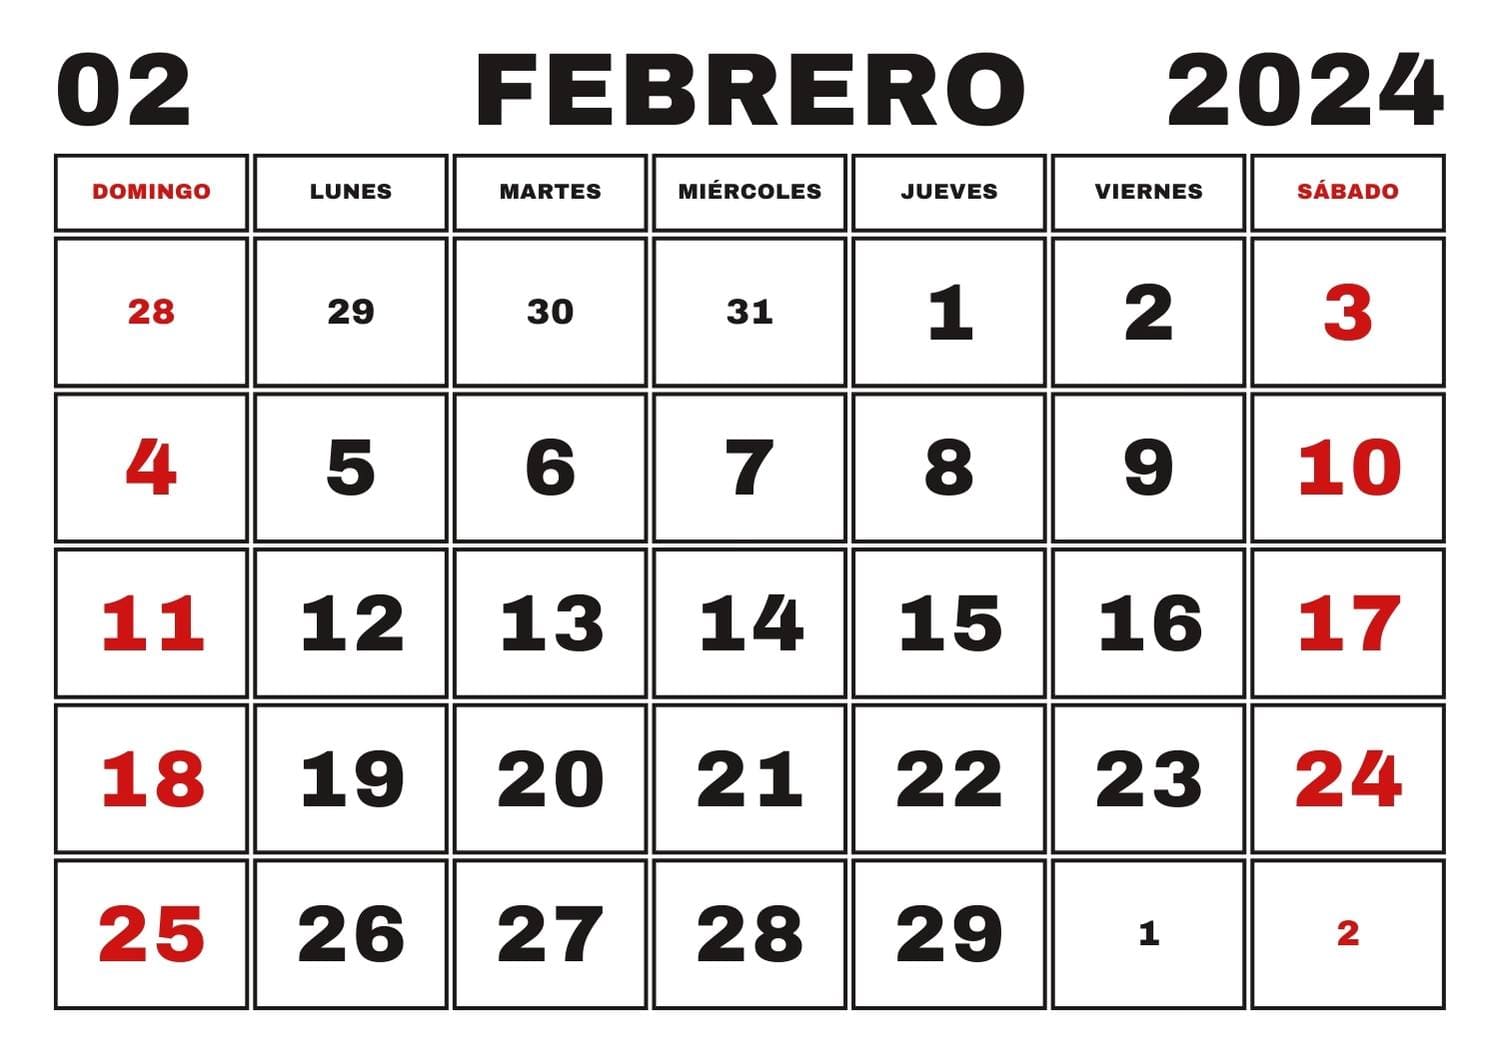 Calendario lunar febrero 2024